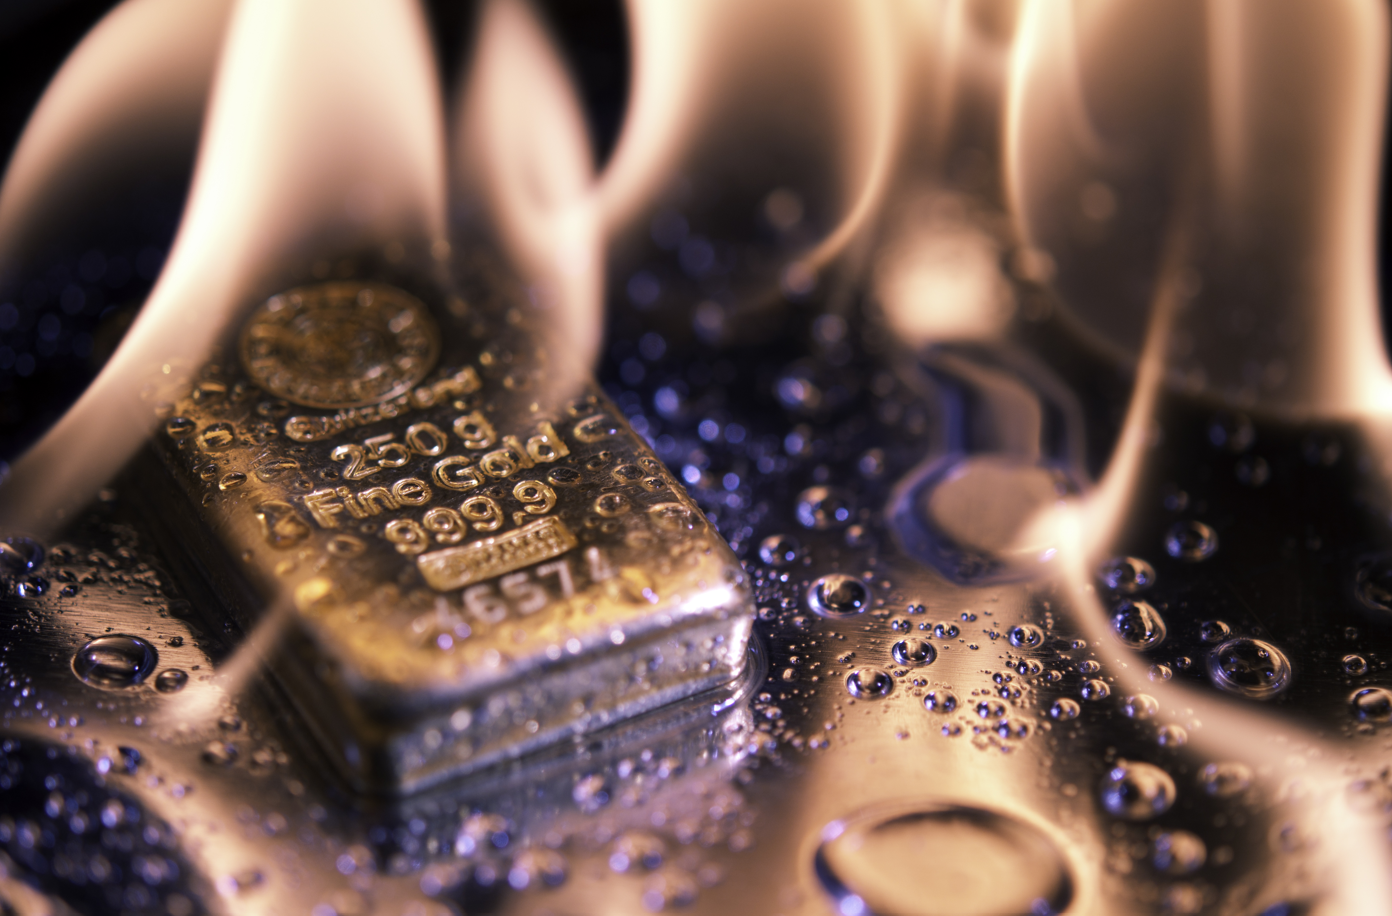 Ons altın fiyatı son dokuz haftanın en düşük seviyesinden toparlıyor